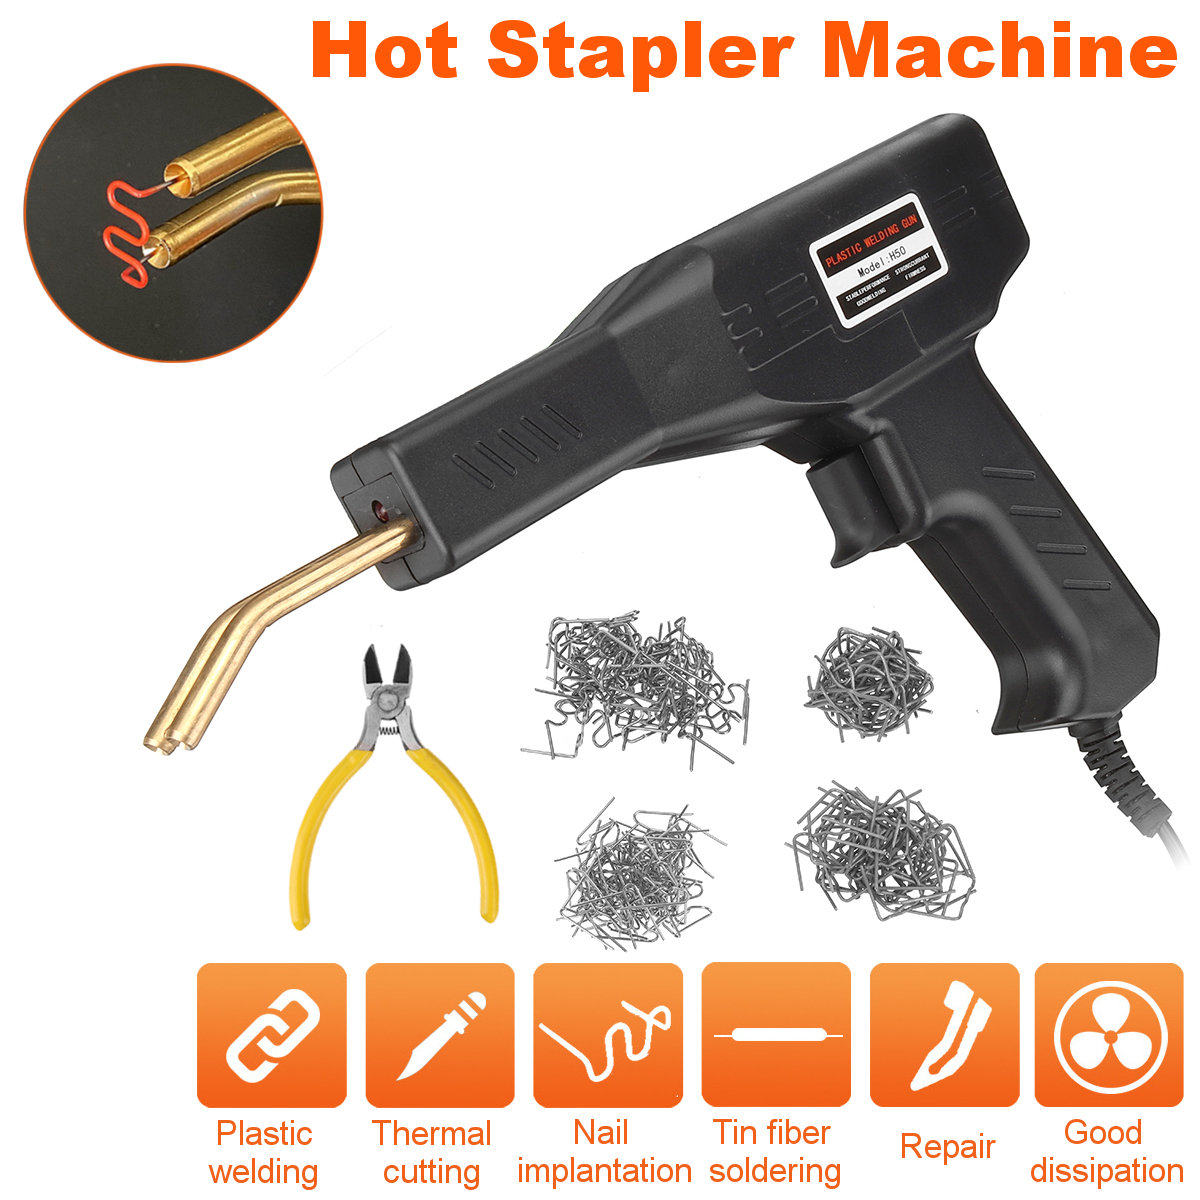 Plastic-Welding-Machine-Car-Bumper-Hot-Stapler-Plastic-Welding-Torch-Fairing-Auto-Body-Tool-Repair-S-1848002-5